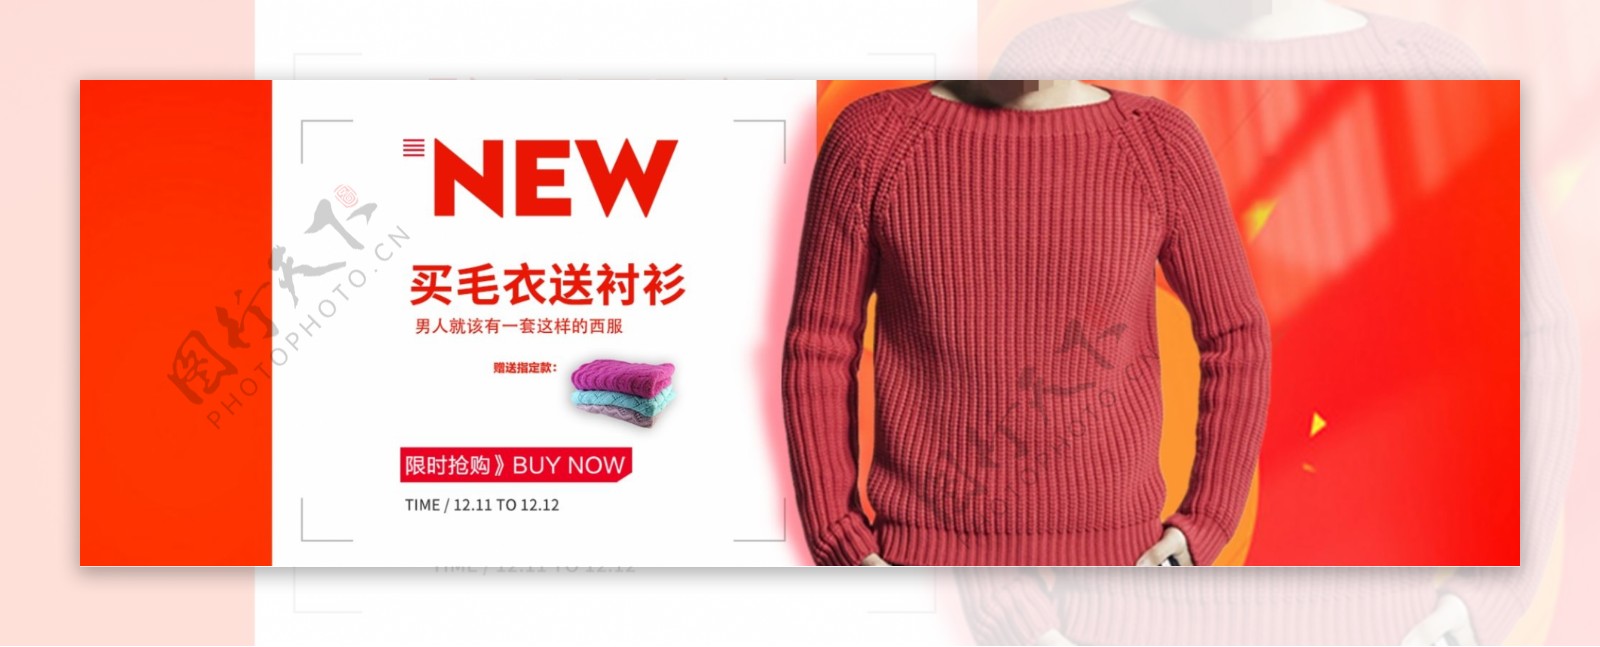 红色大促新品买毛衣送衬衫男装淘宝电商海报